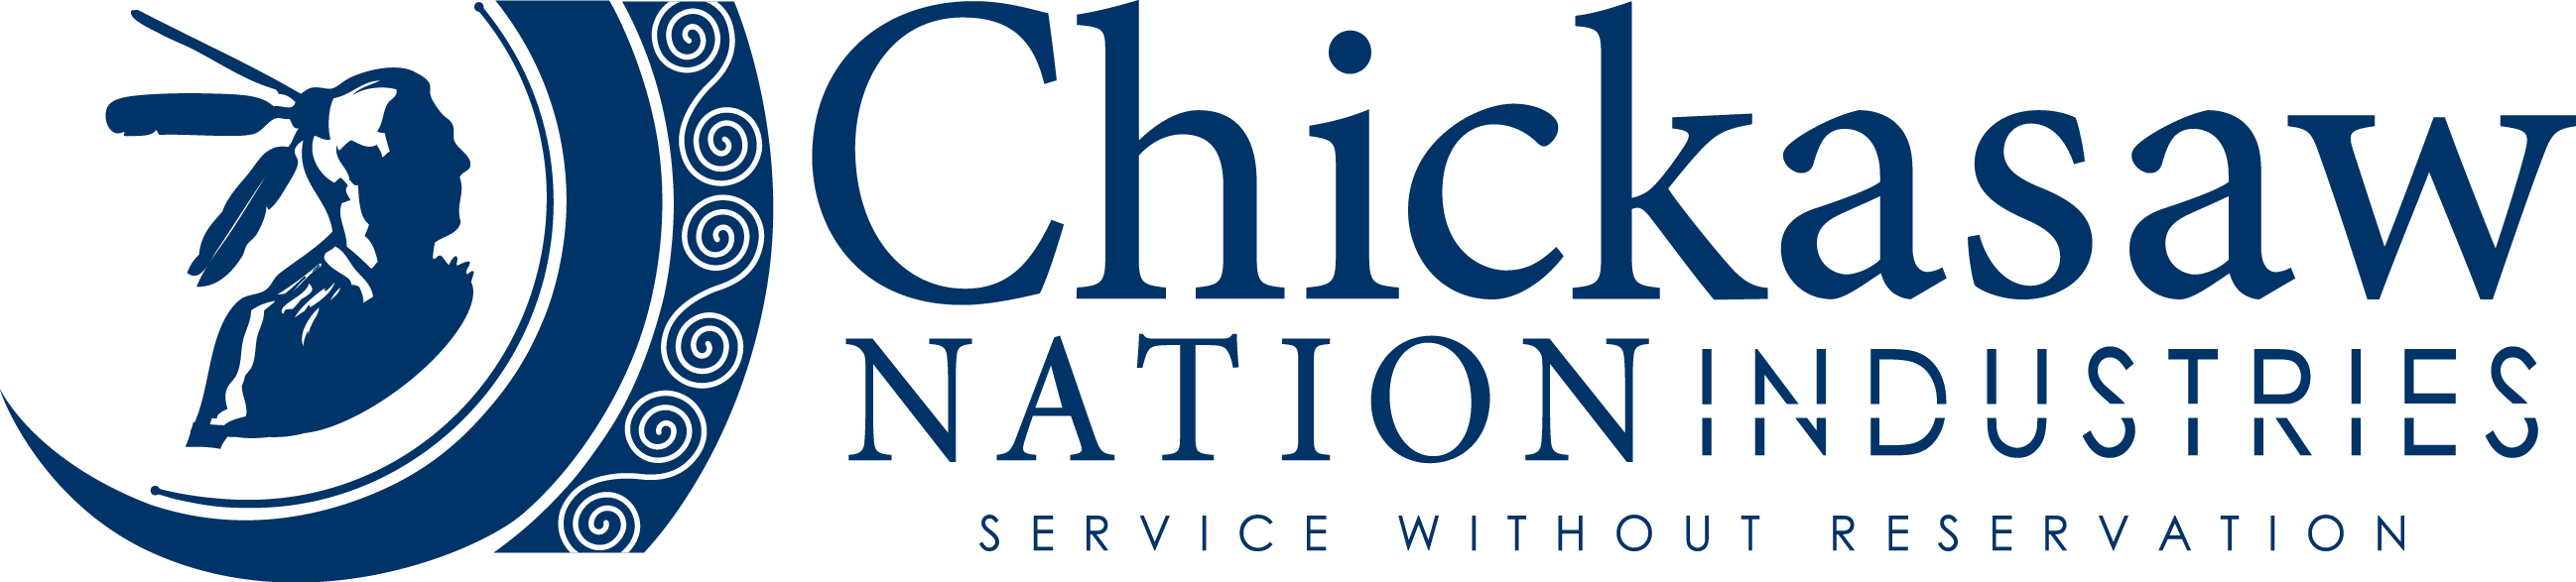 775 Chickasaw Strategic Pointe, LLC logo